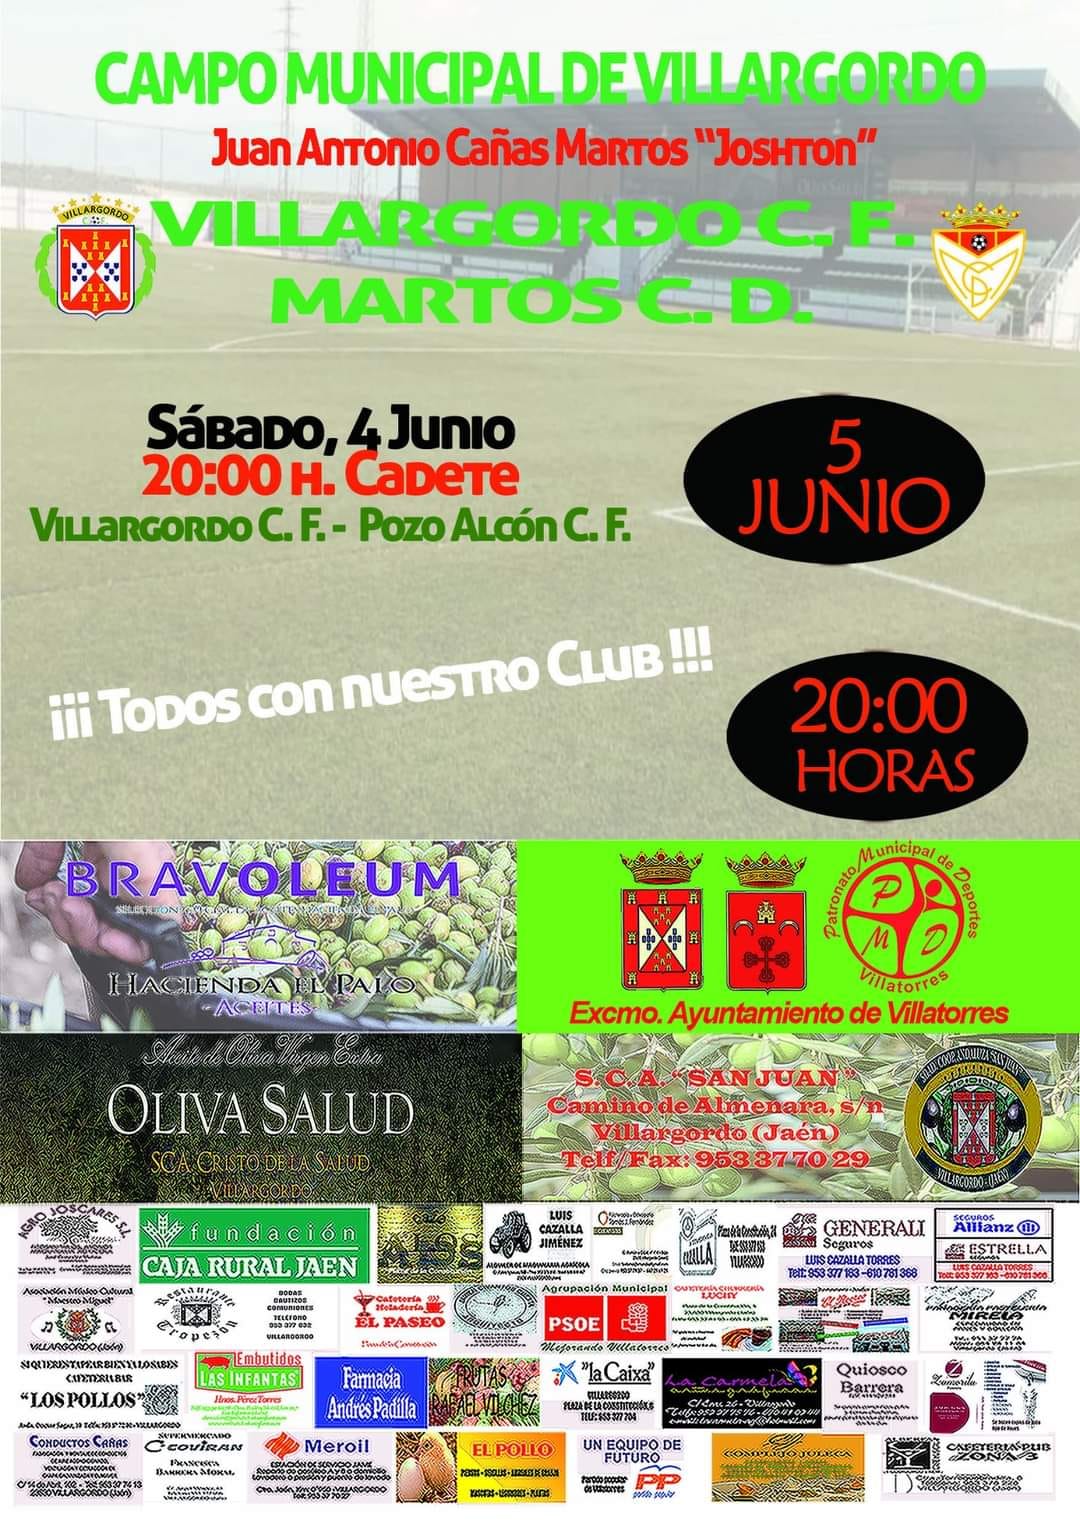 Partido de Fútbol Villargordo C.F - Martos C.D